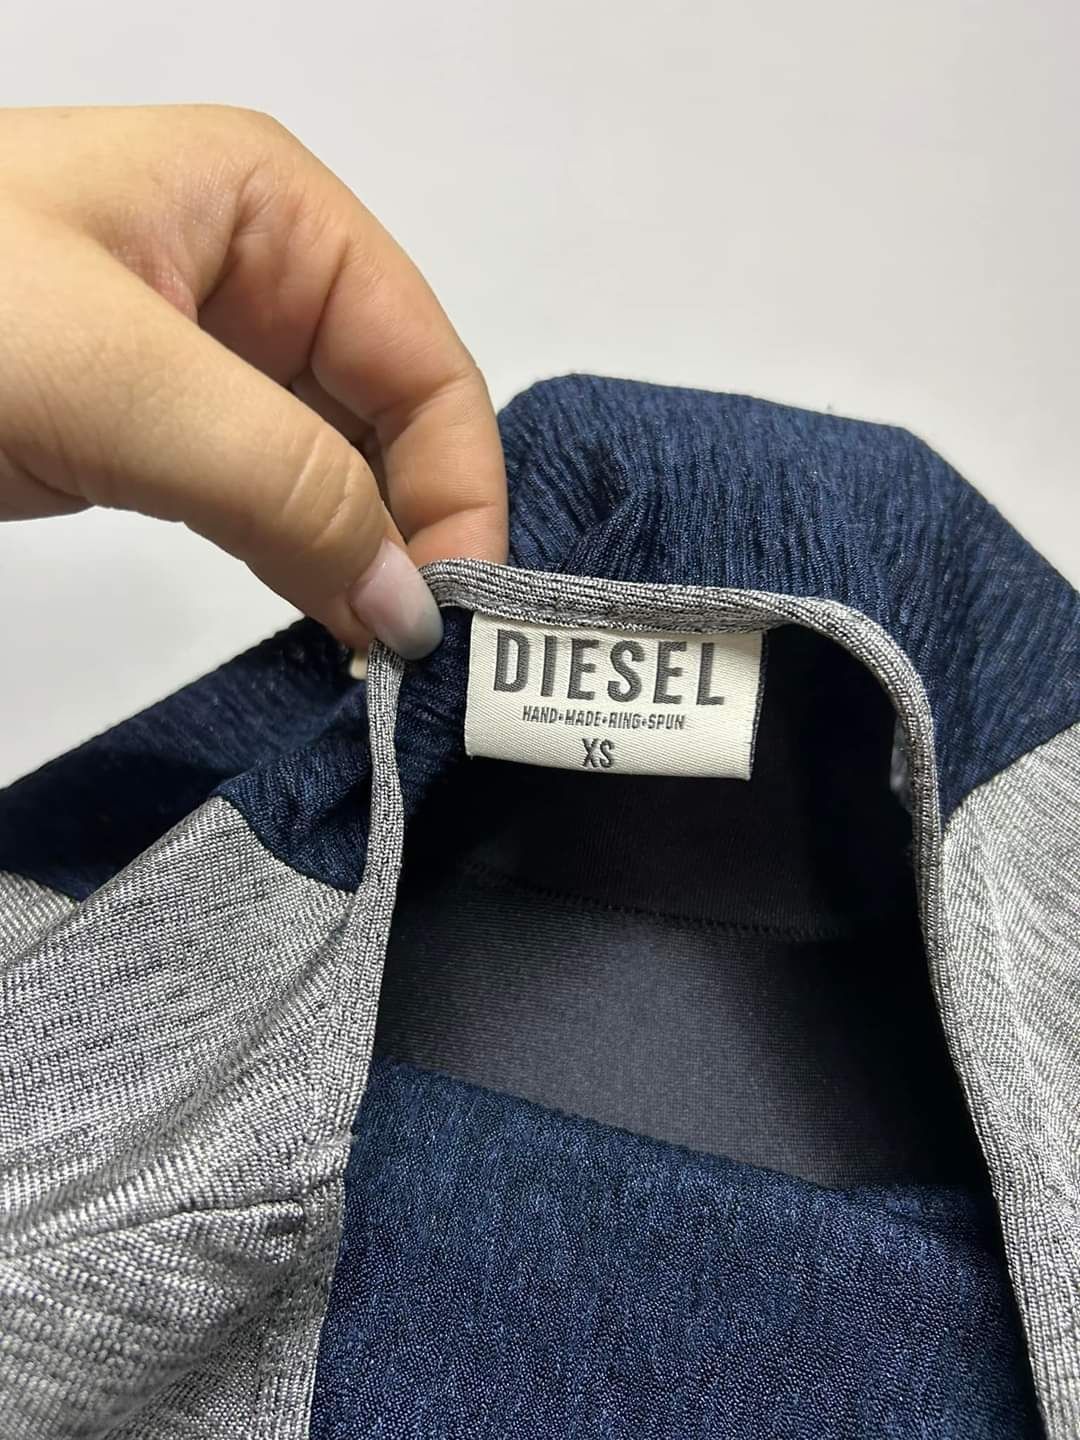 Diesel XS bluzka koszulka granatowa szara krótki rękaw